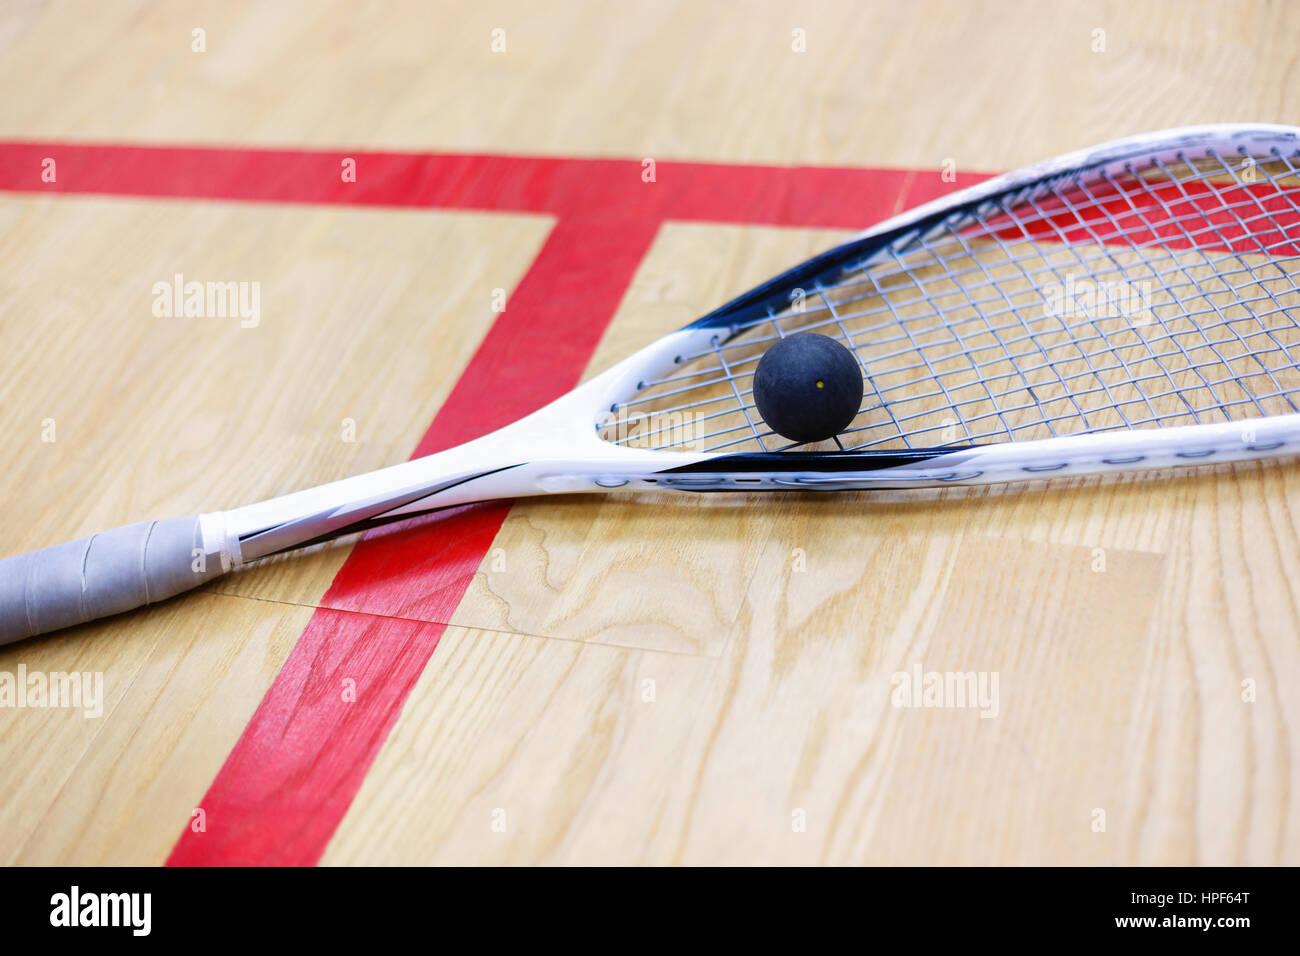 Squash-Schläger und Ball auf dem hölzernen Hintergrund. Squash-Ausrüstung. Squash-Ball und Squash Schläger auf dem Platz neben einer roten Linie. Foto mit sele Stockfoto